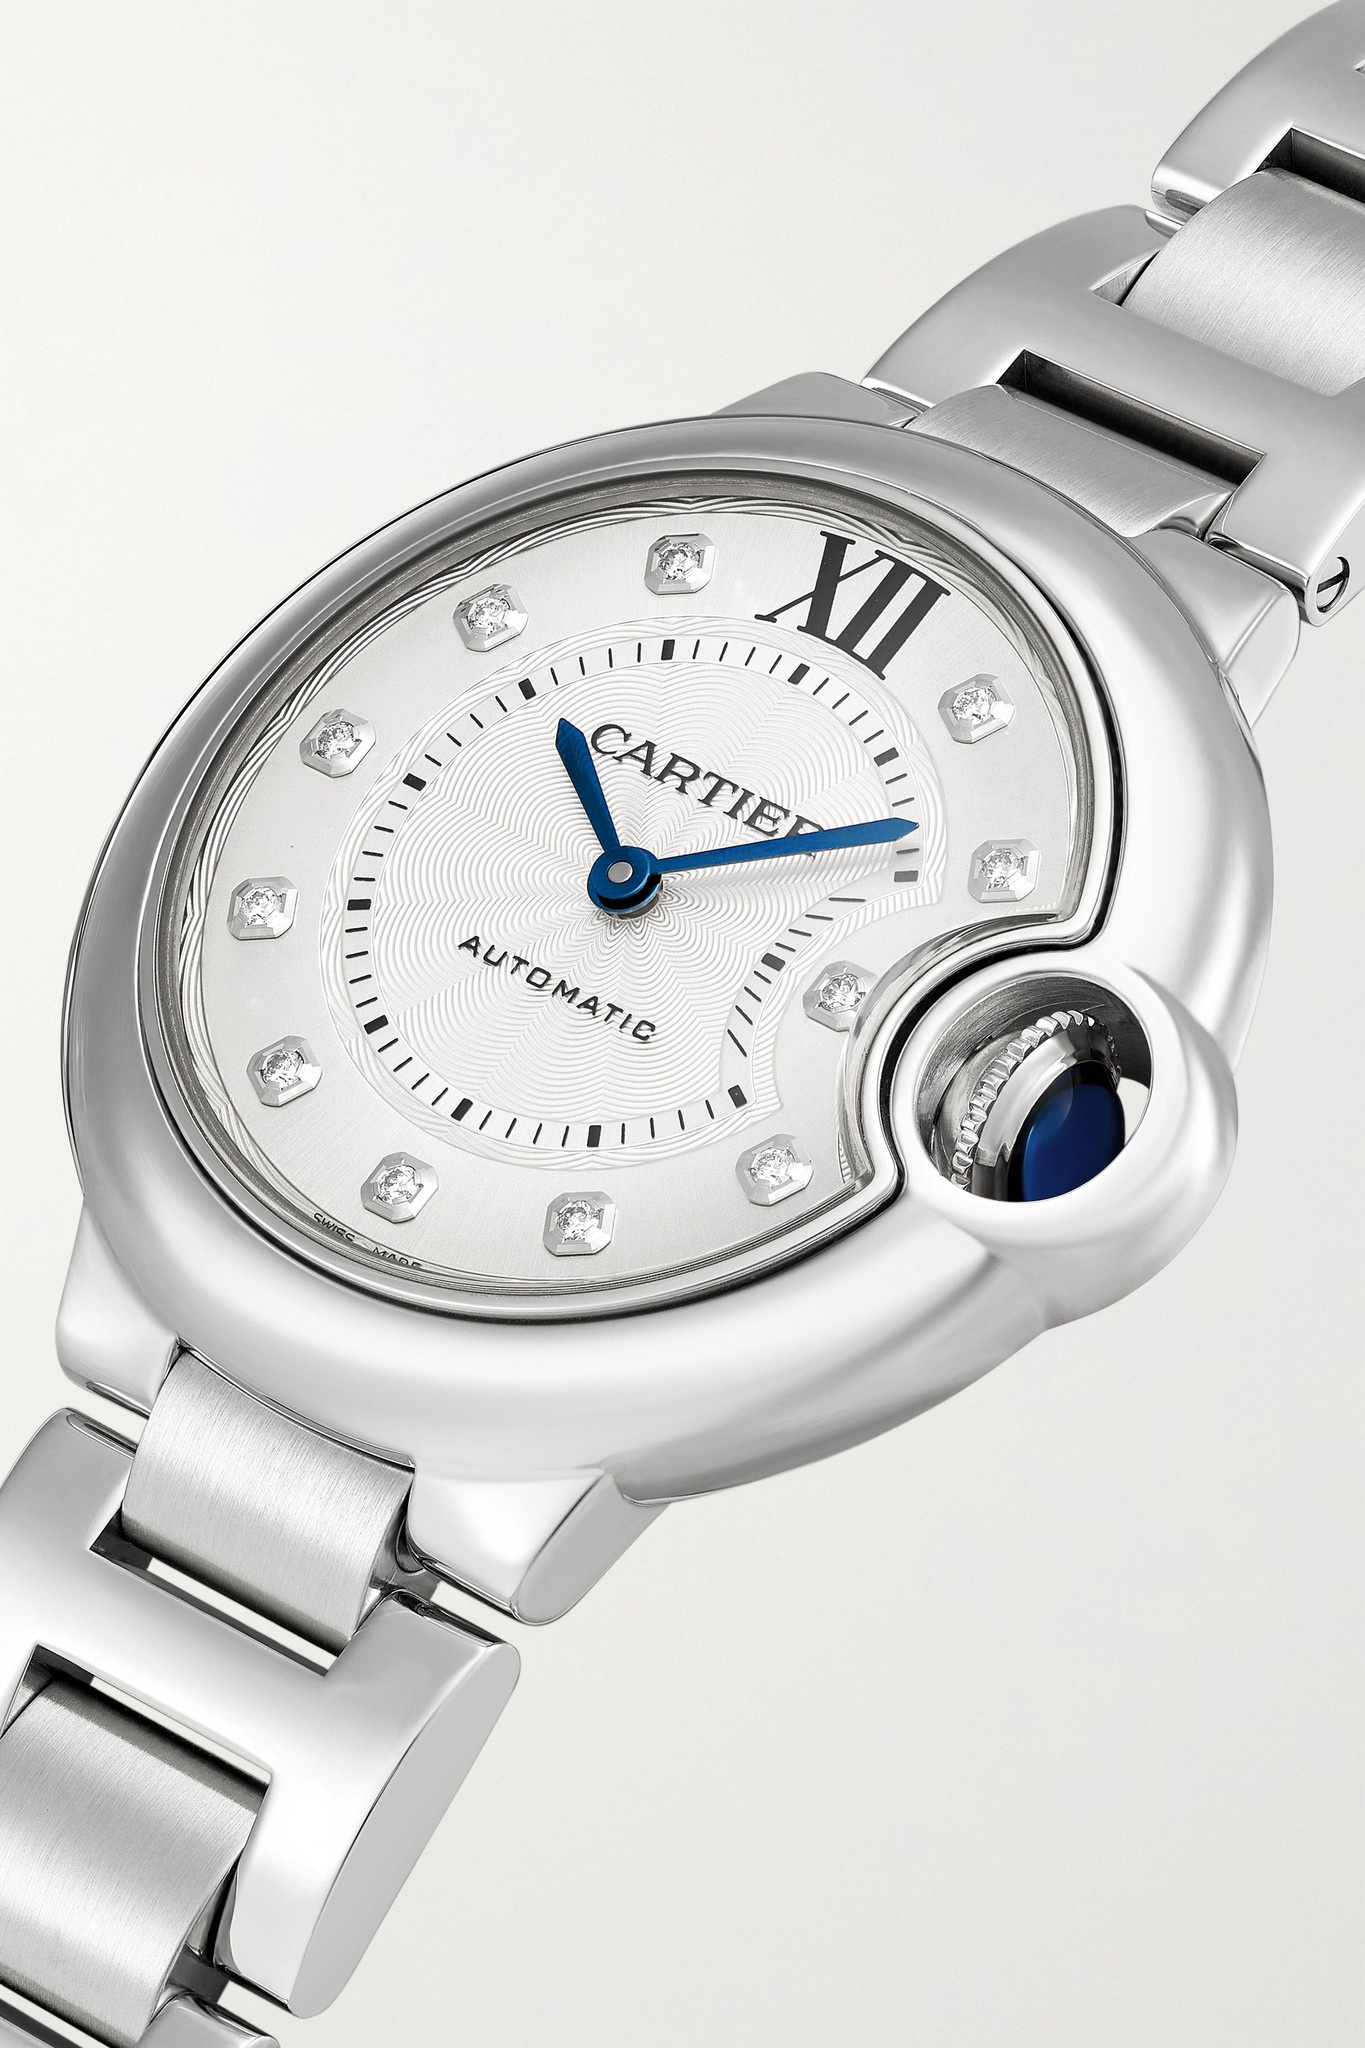 Ballon Bleu de Cartier Automatic 33mm stainless steel and diamond watch - 3